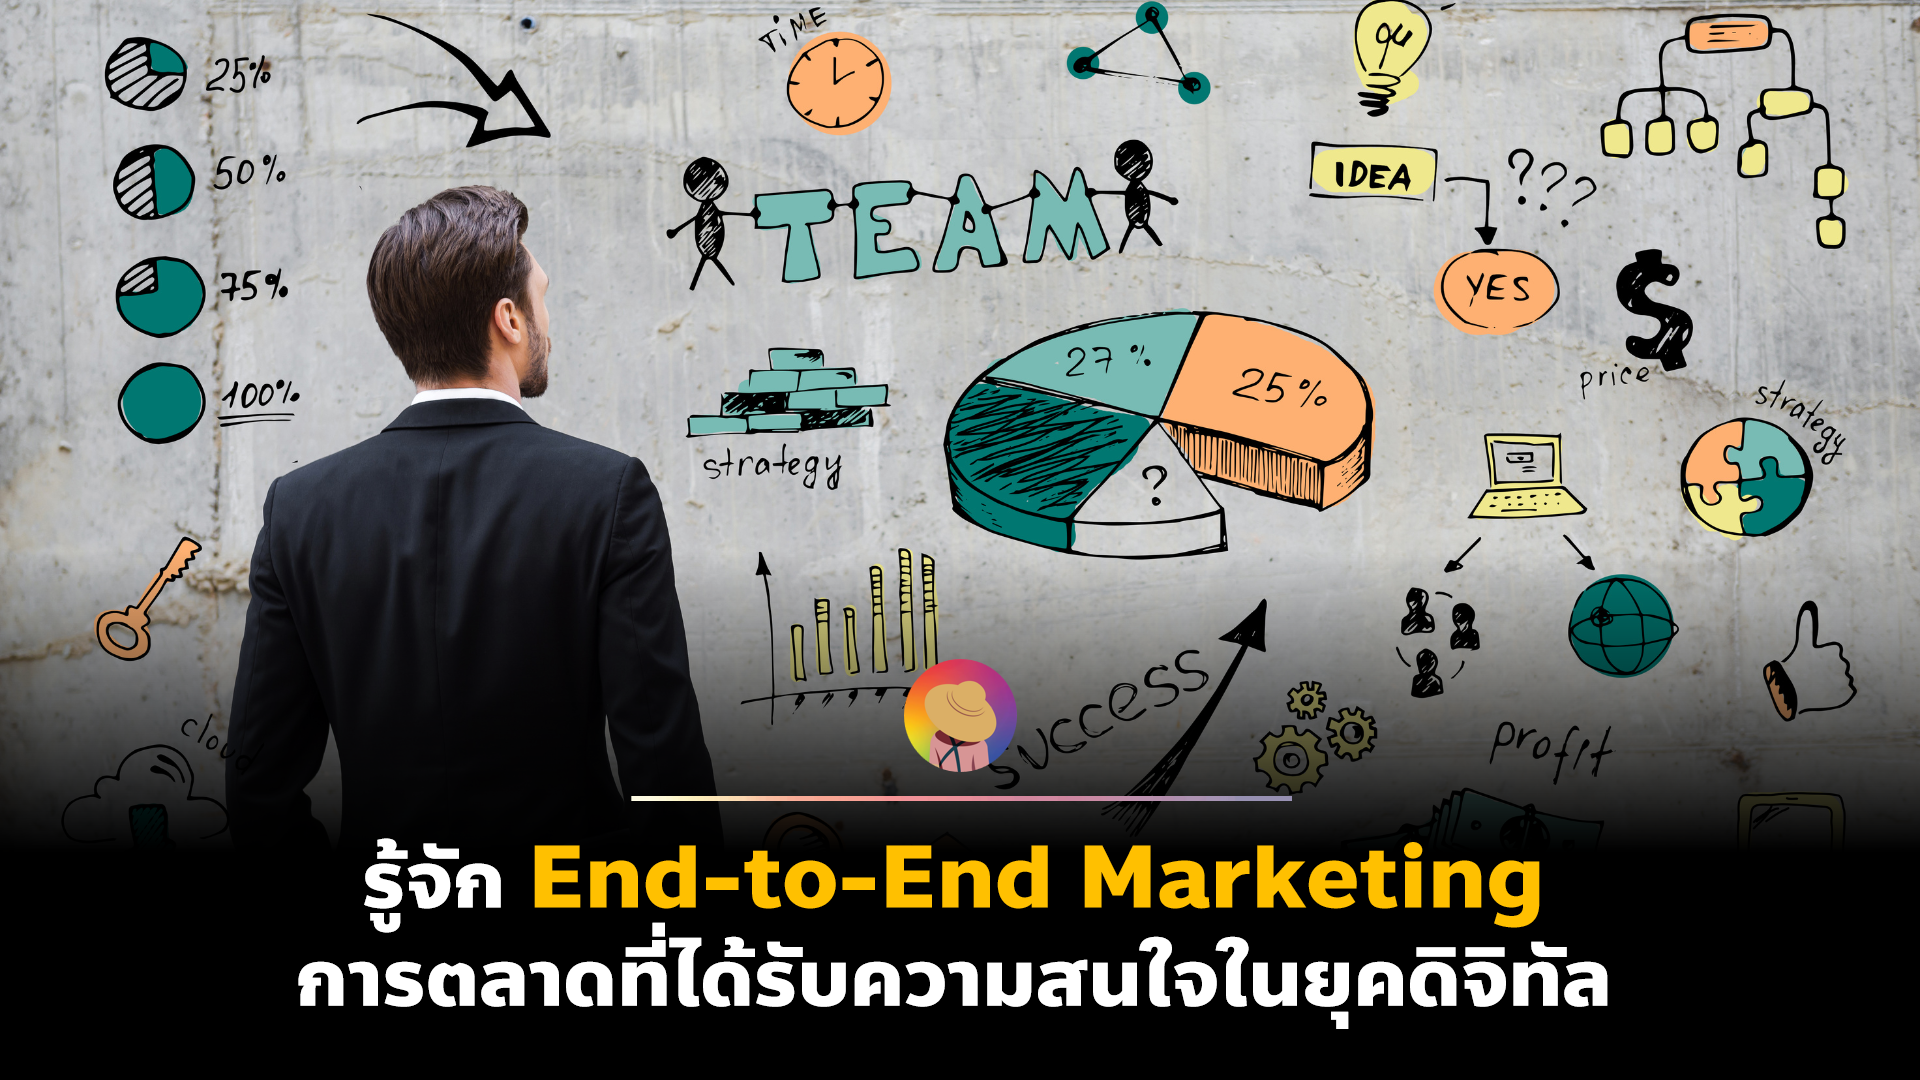 รู้จัก End-to-End Marketing การตลาดที่ได้รับความสนใจในยุคดิจิทัล